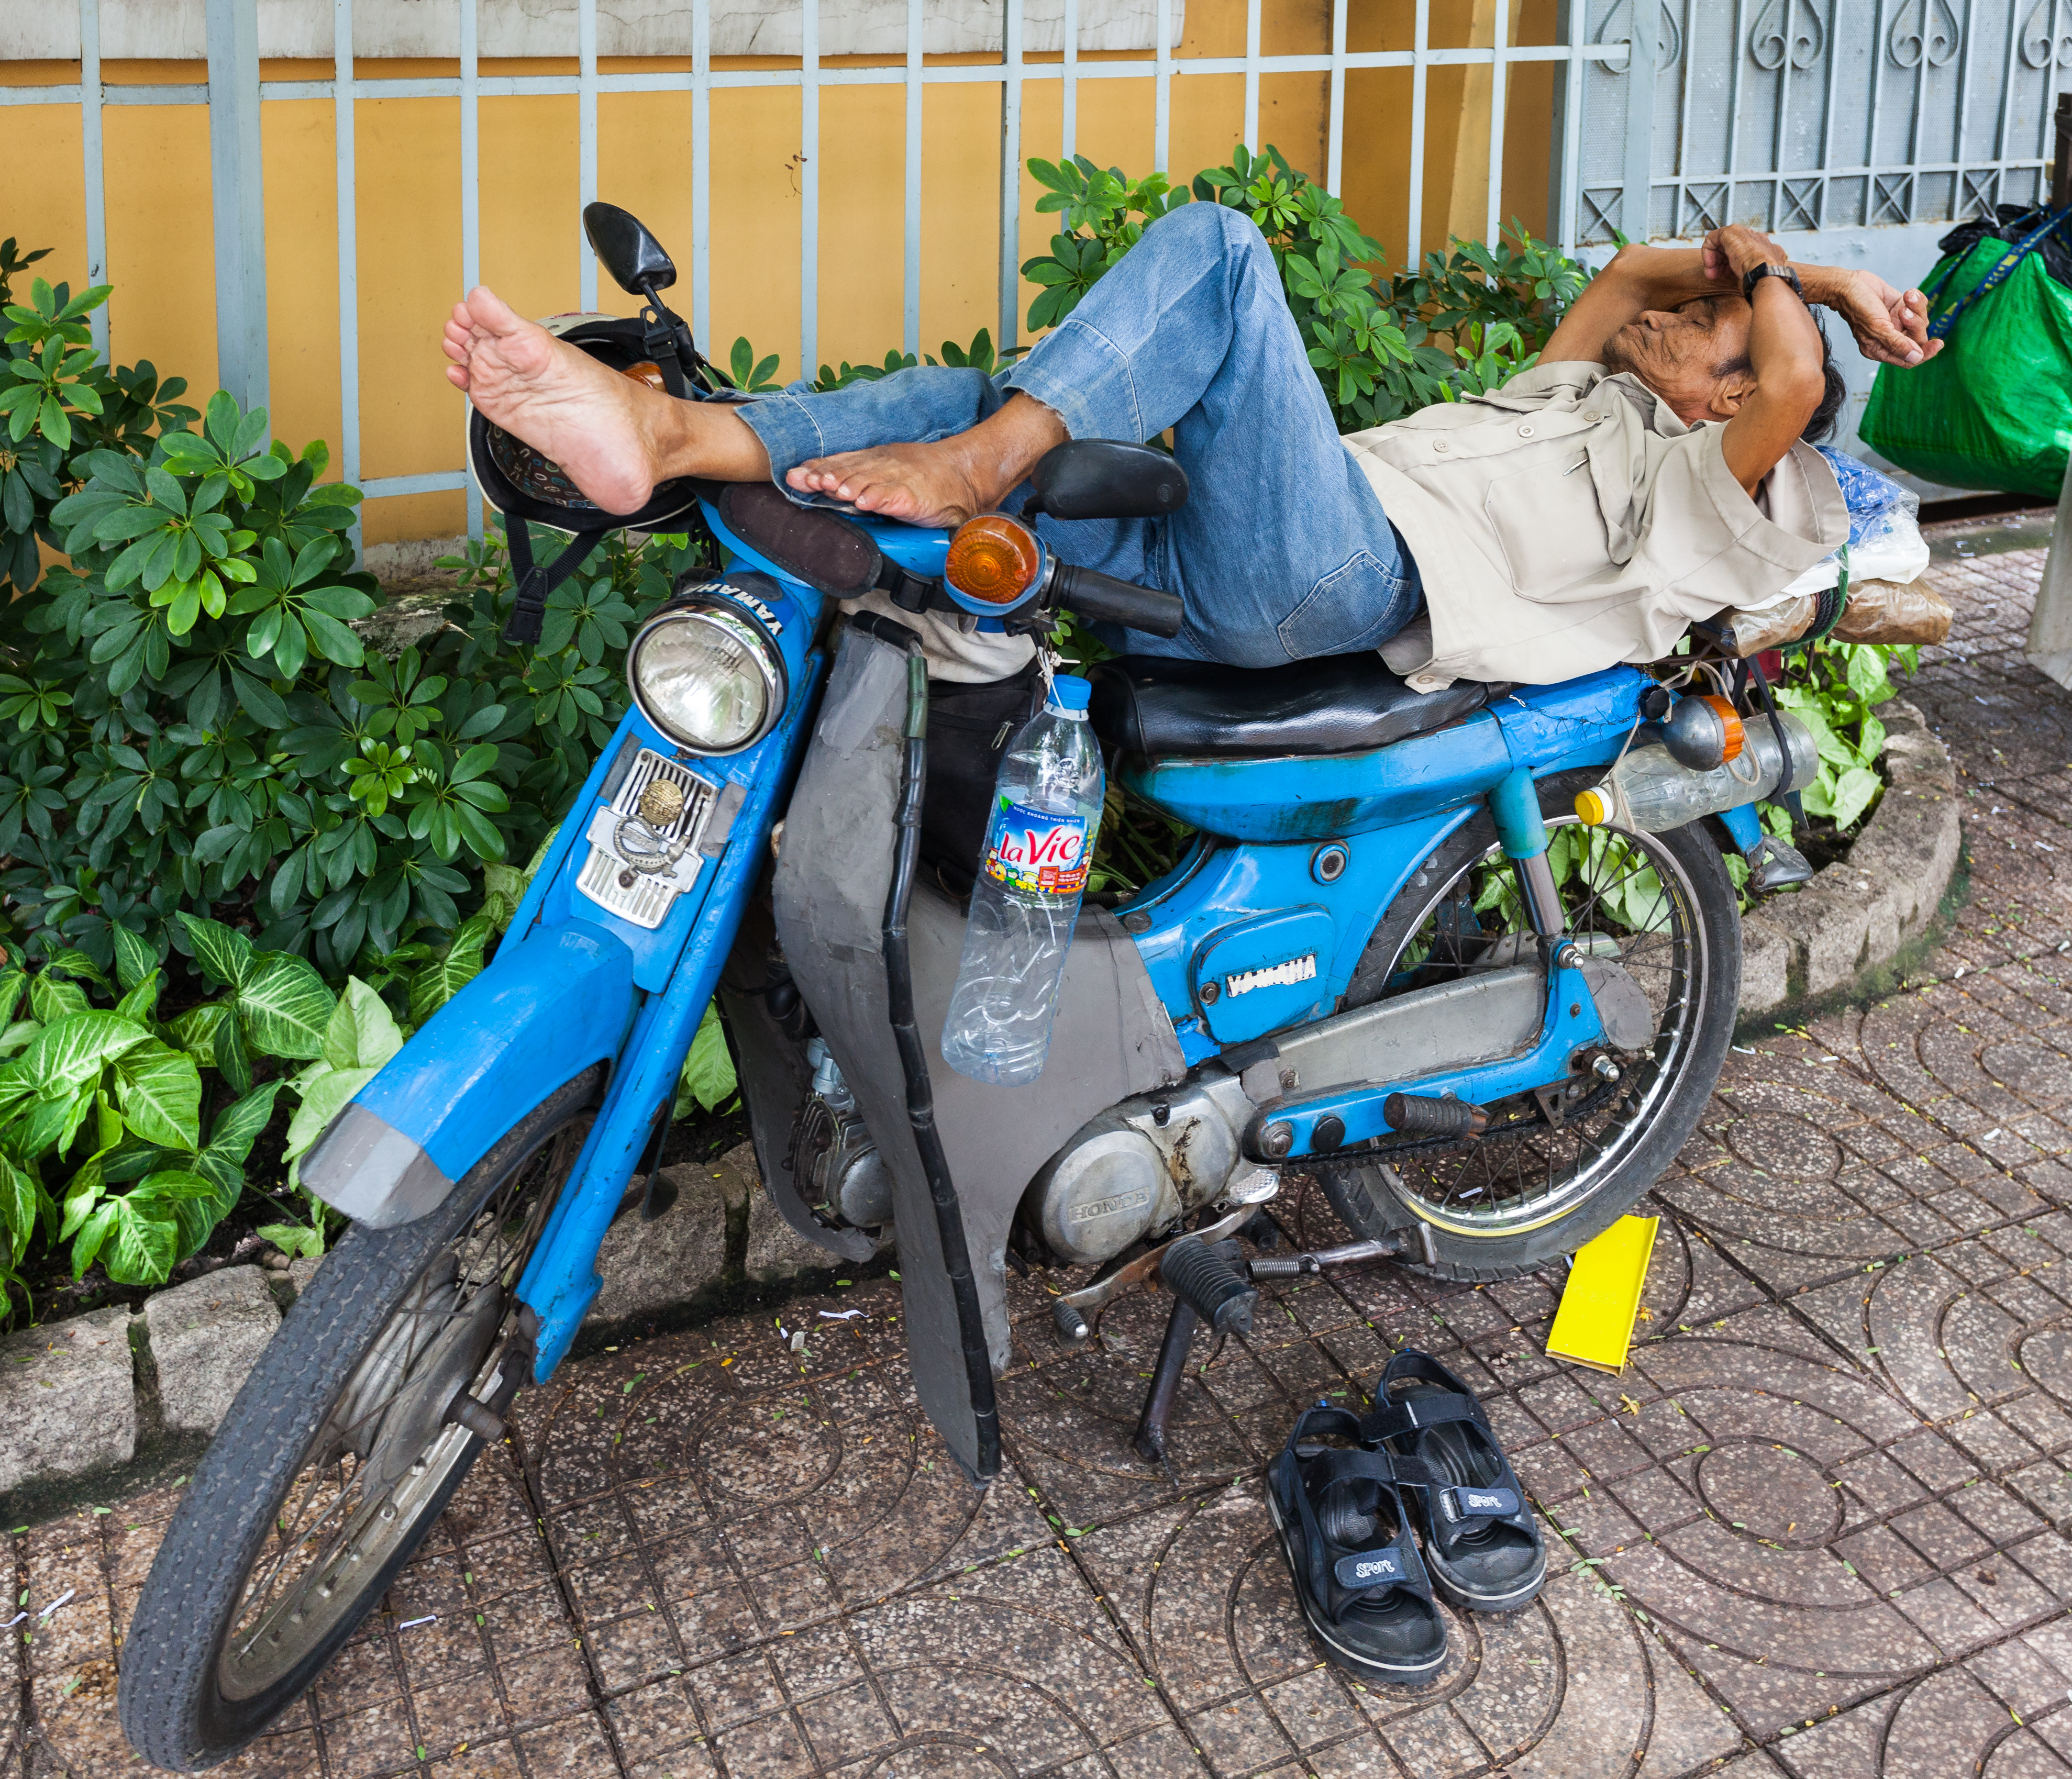 Hora de la siesta en Ciudad Ho Chi Minh, Vietnam, 2013-08-14, DD 01